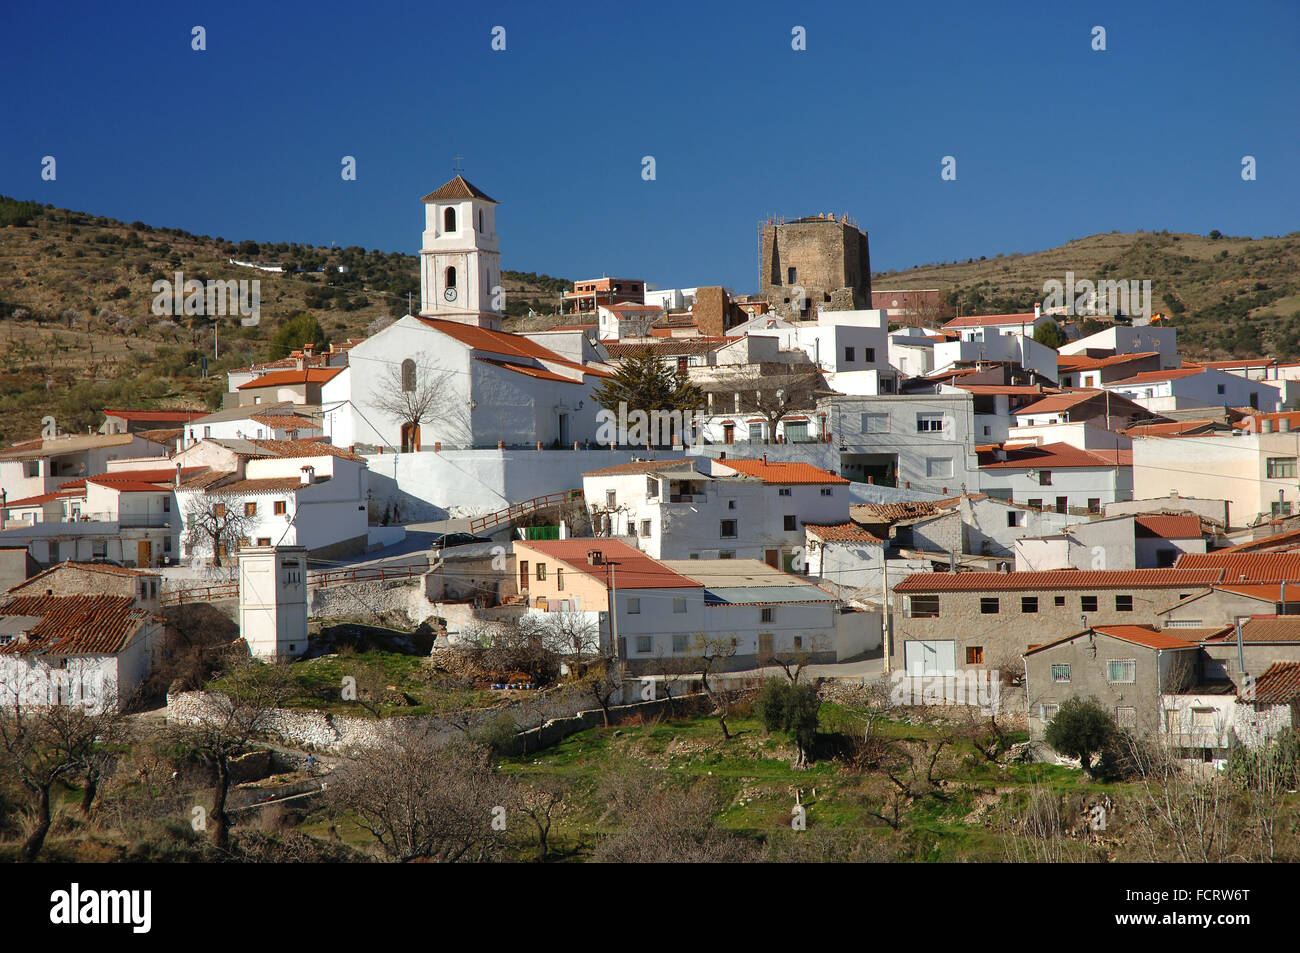 Tahal, village de montagne de l'Filabres, la province d'Almeria, Andalousie, Espagne, Europe Banque D'Images